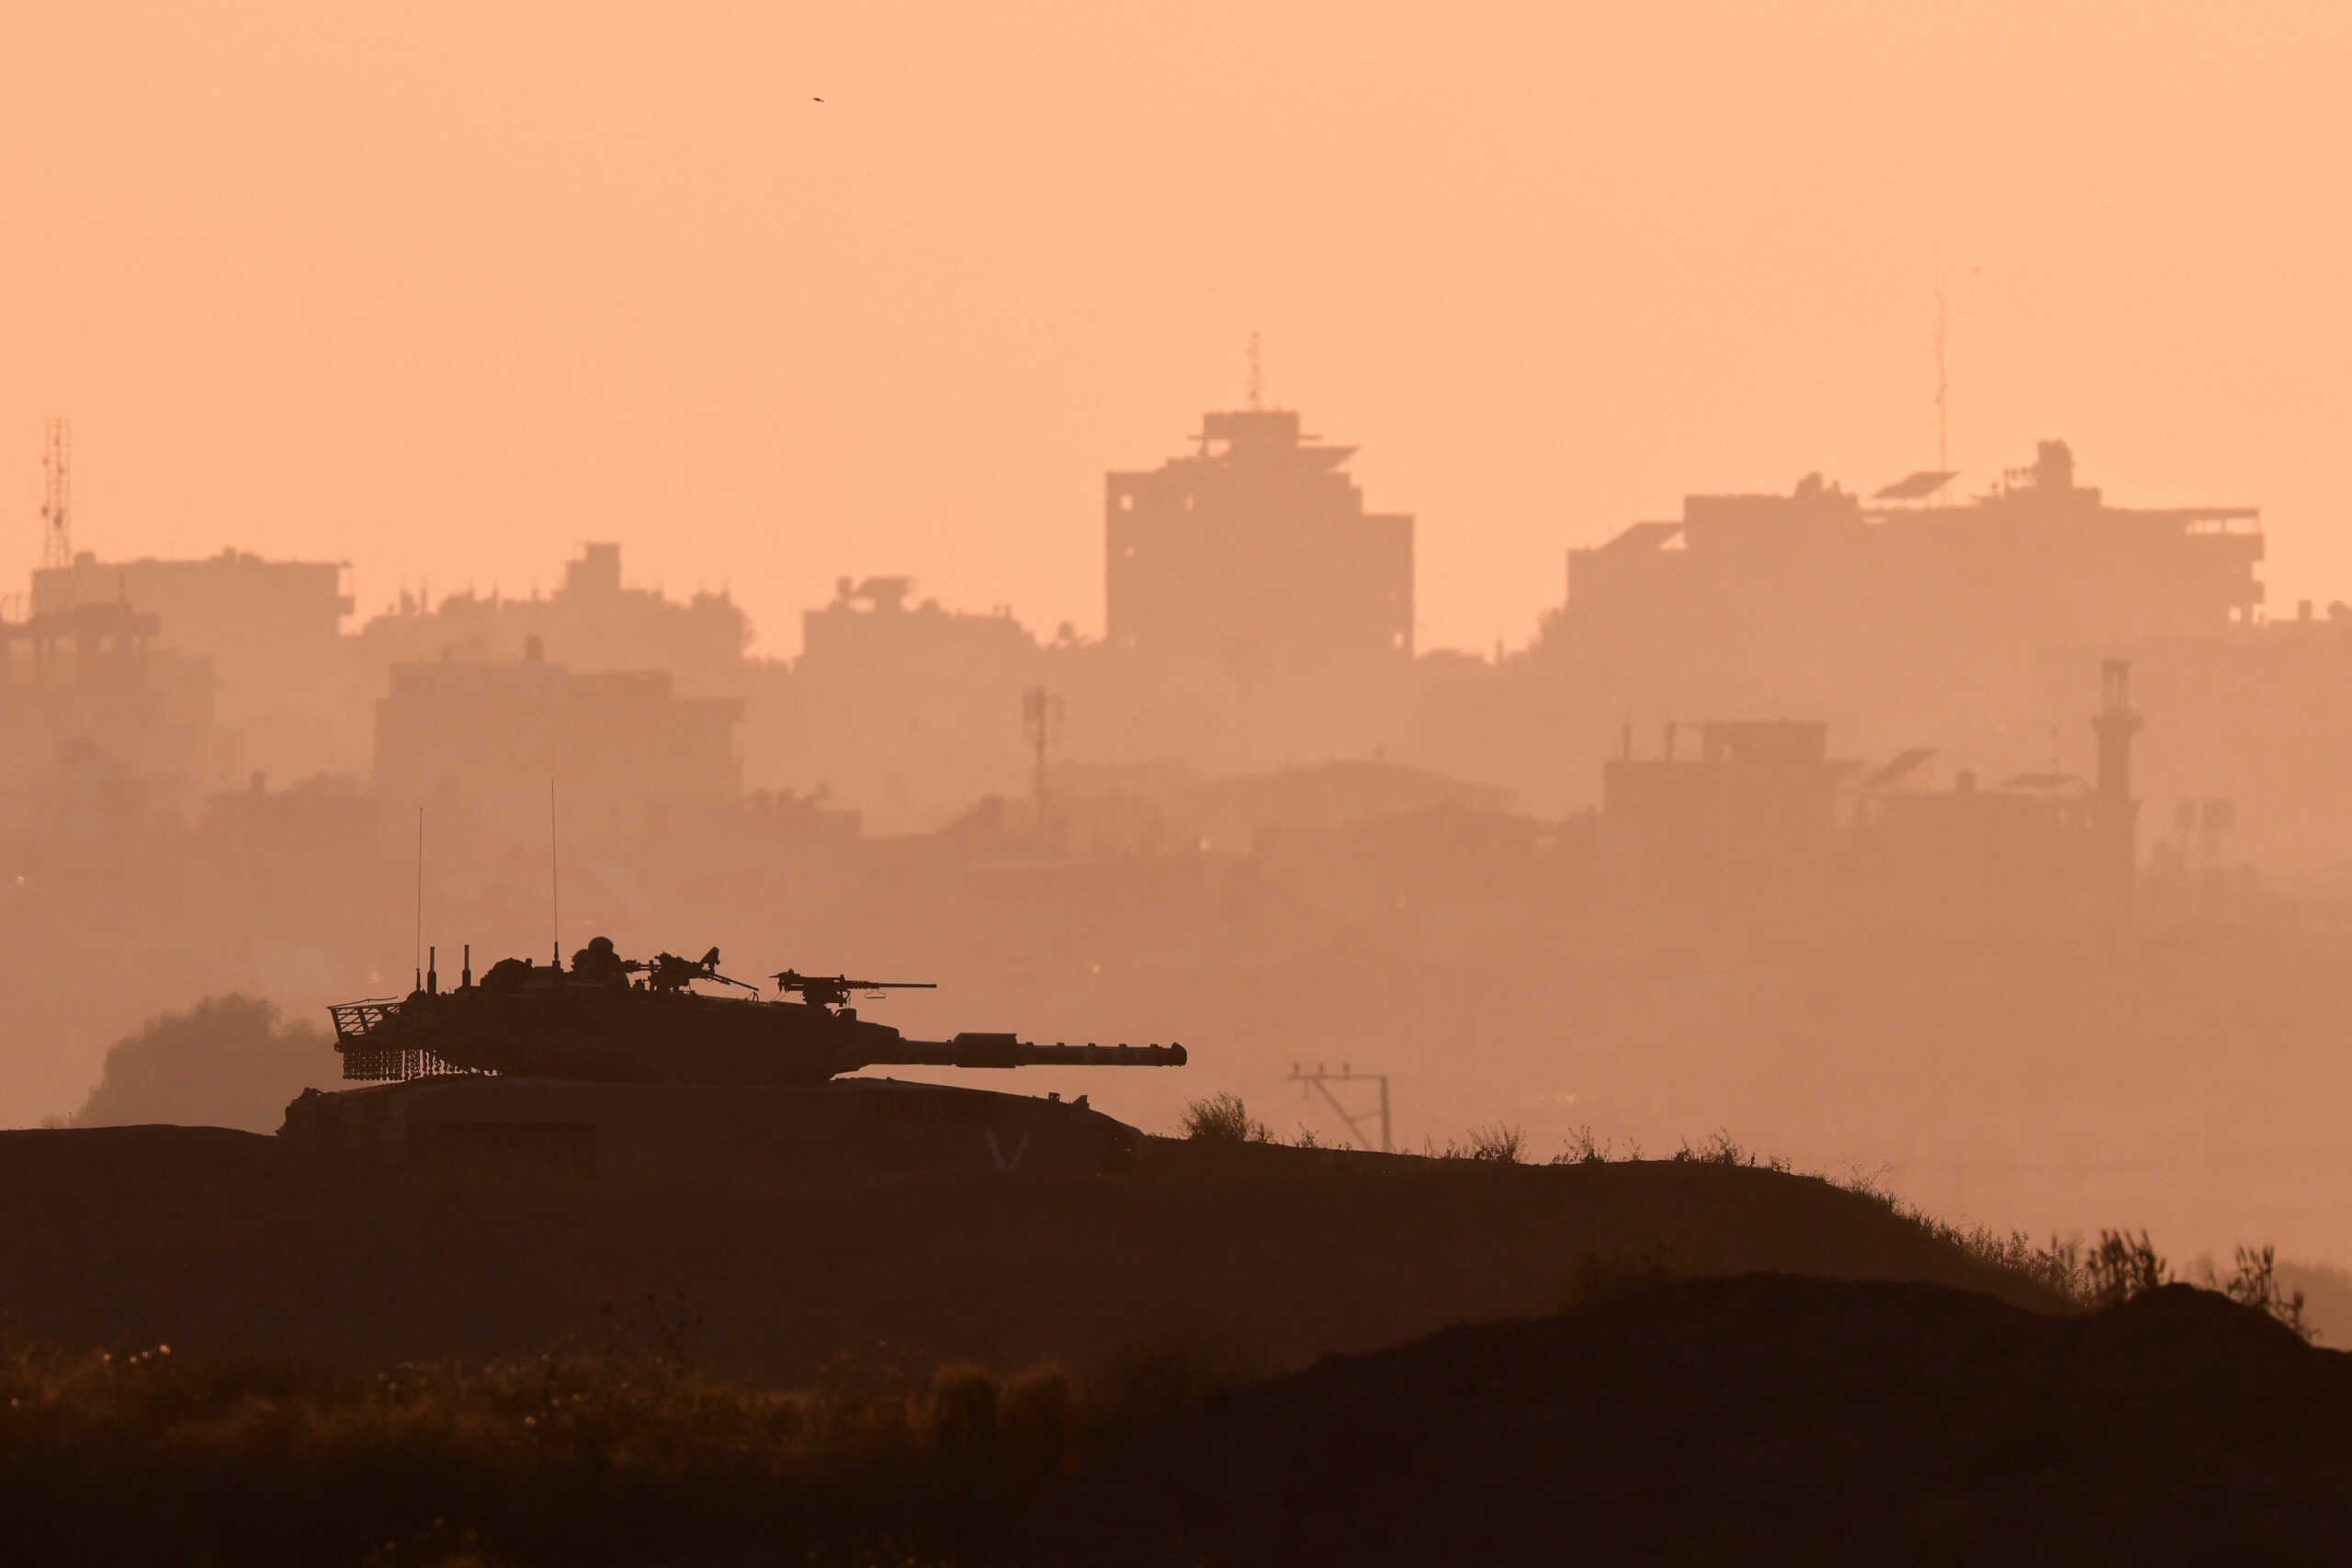 Μέση Ανατολή: Το Ισραήλ ετοιμάζεται για επίθεση από το Ιράν μέσα στο επόμενο 48ωρο γράφει η WSJ